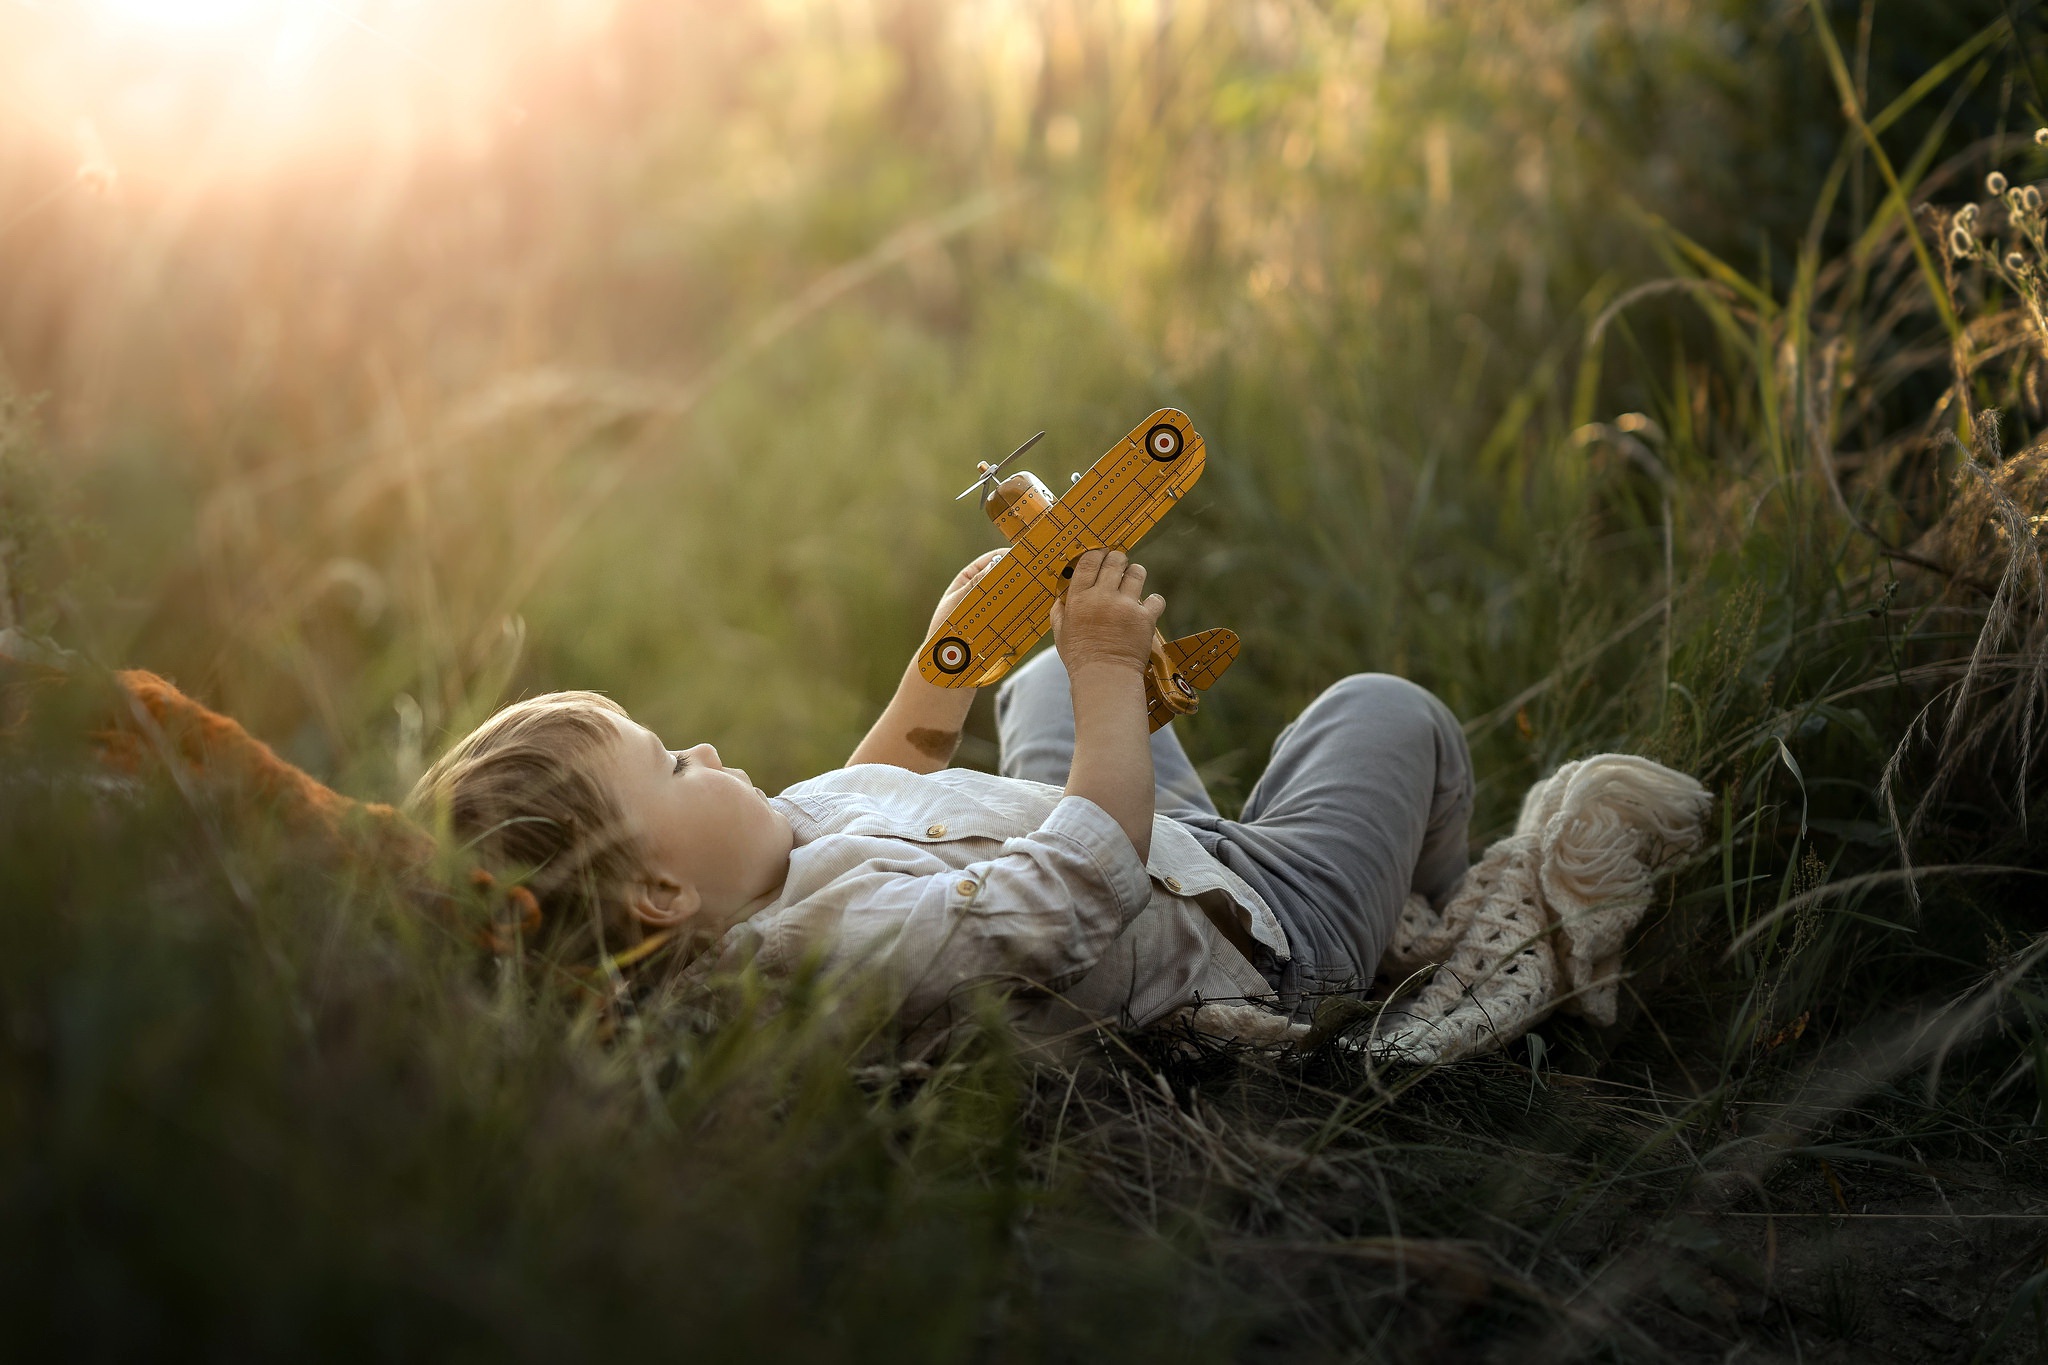 Фото Мальчик с игрушечным самолетиком лежит в траве, фотограф Iwona Podlasinska